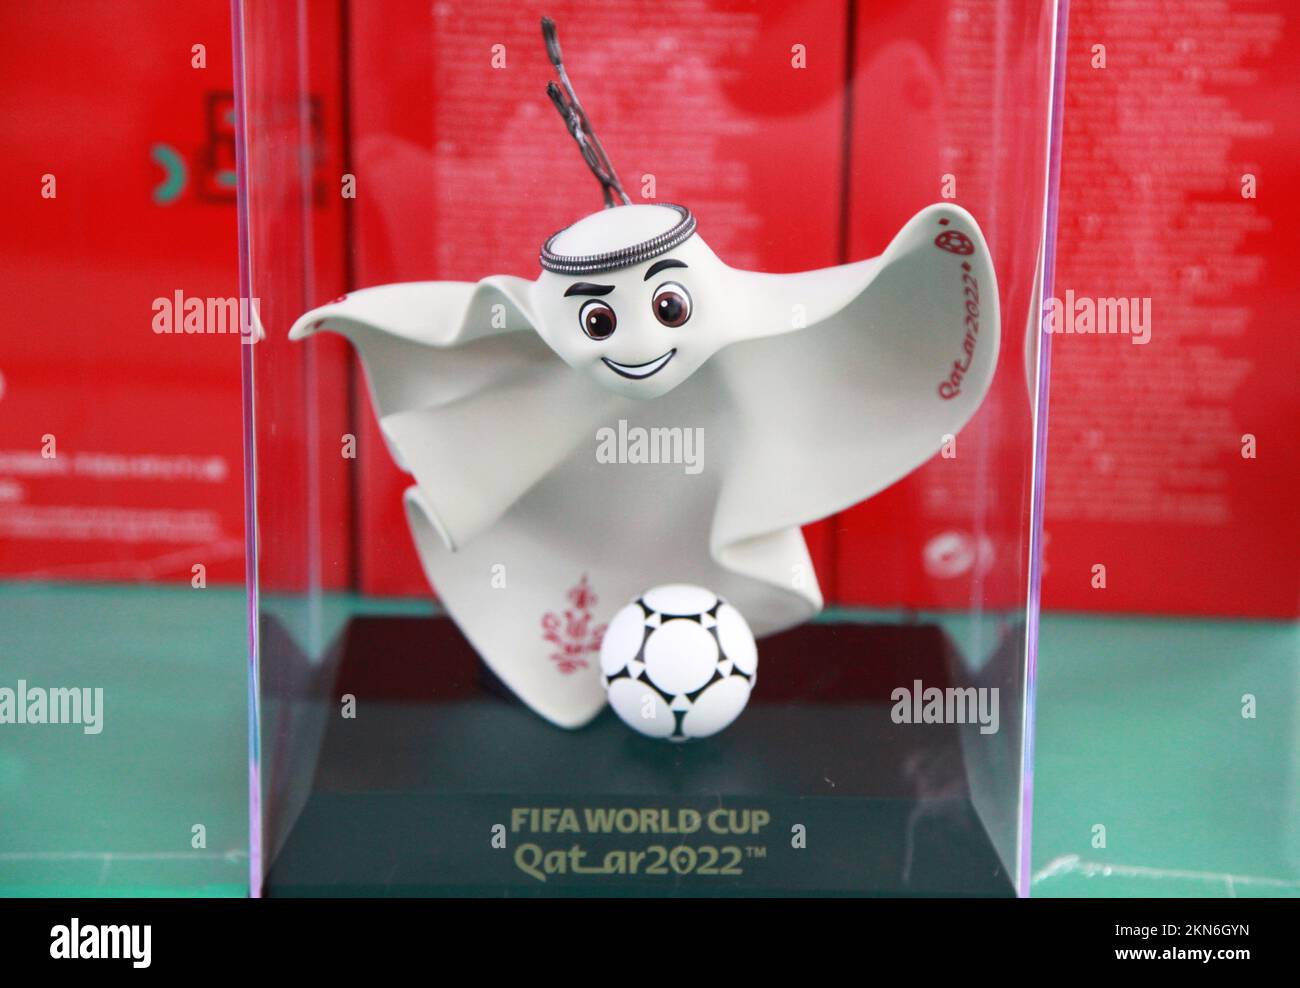 NANJING, CHINE - 27 NOVEMBRE 2022 - Une variété de produits officiellement homologués, y compris des mascottes de la coupe du monde du Qatar 2022, des modèles de la coupe du monde, des ballons de football Banque D'Images